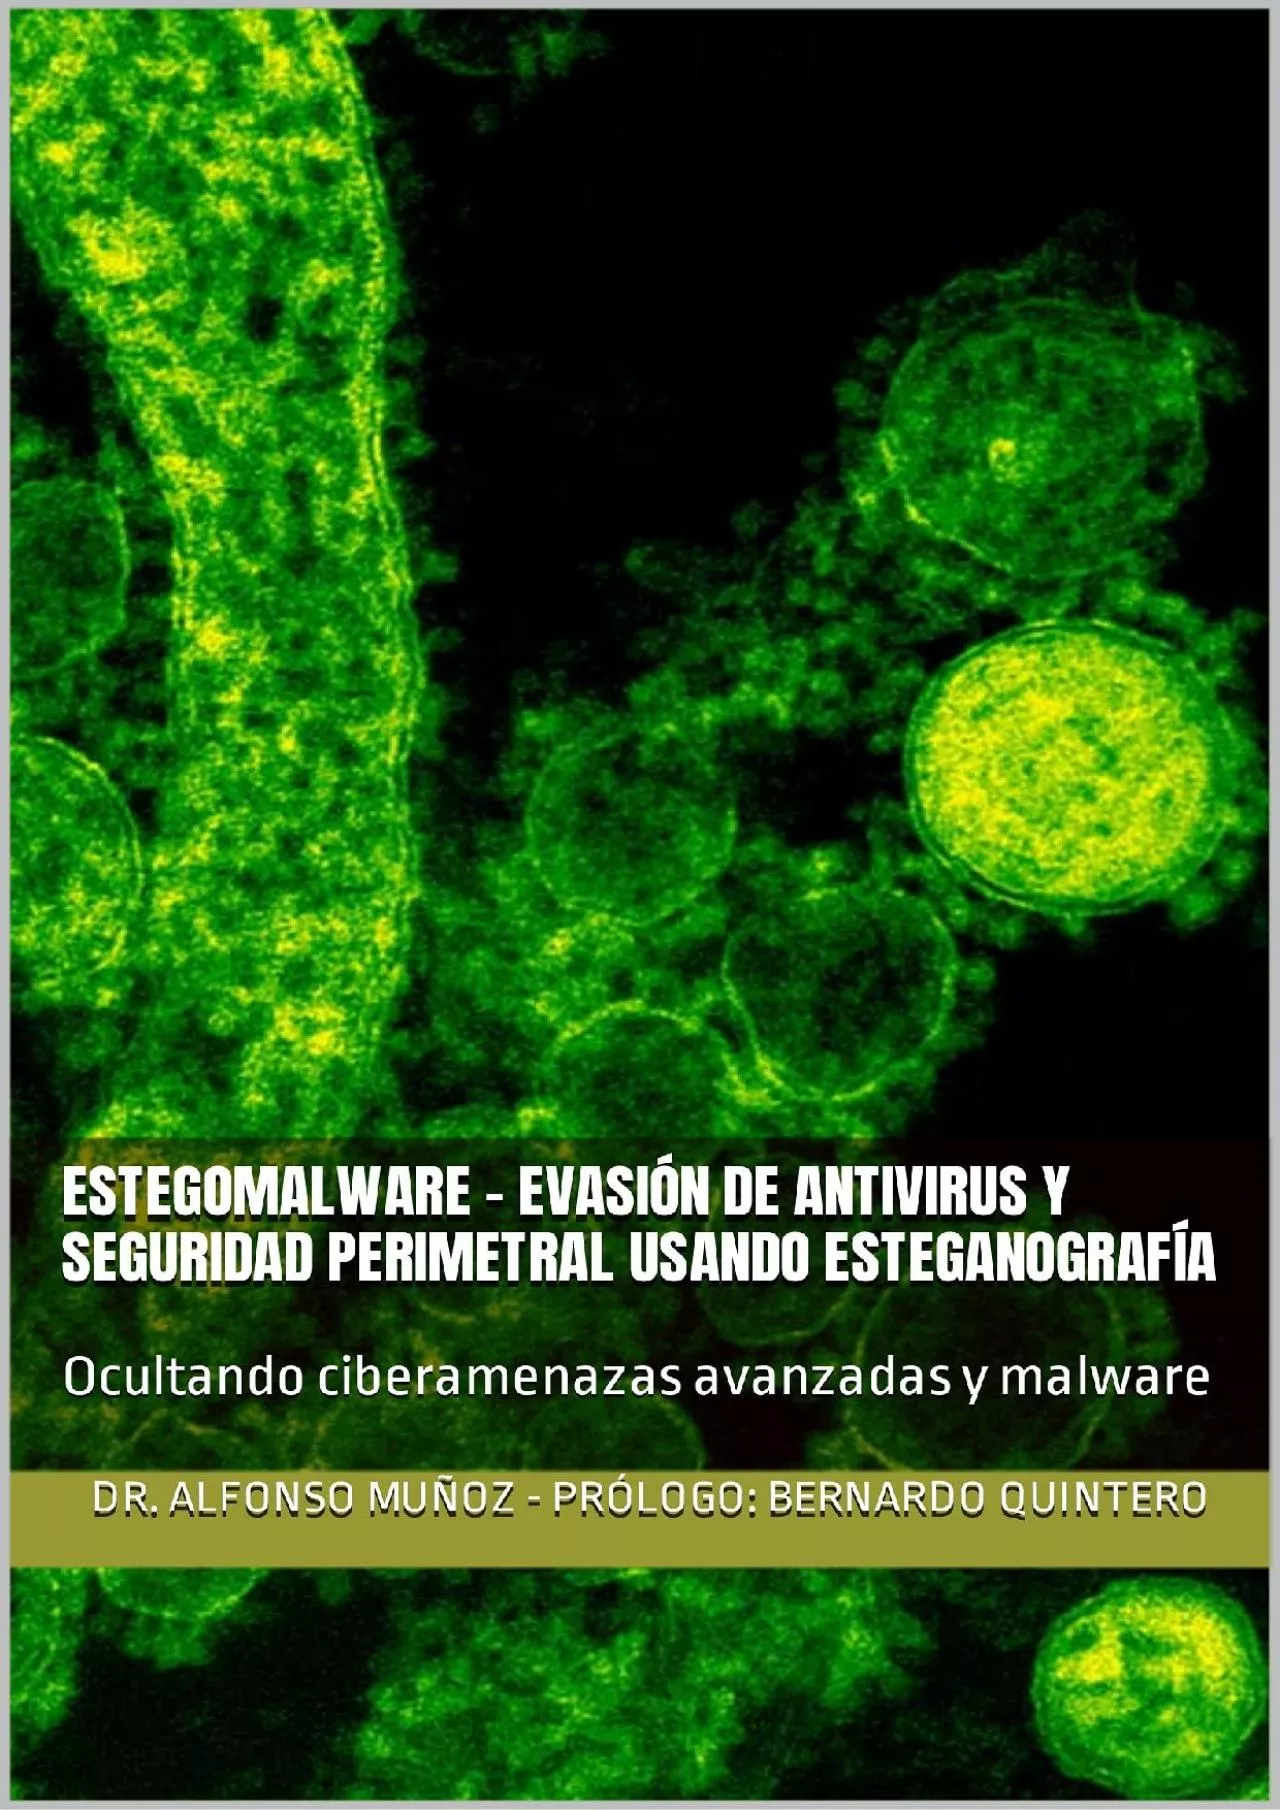 (EBOOK)-Estegomalware - Evasión de antivirus y seguridad perimetral usando esteganografía: